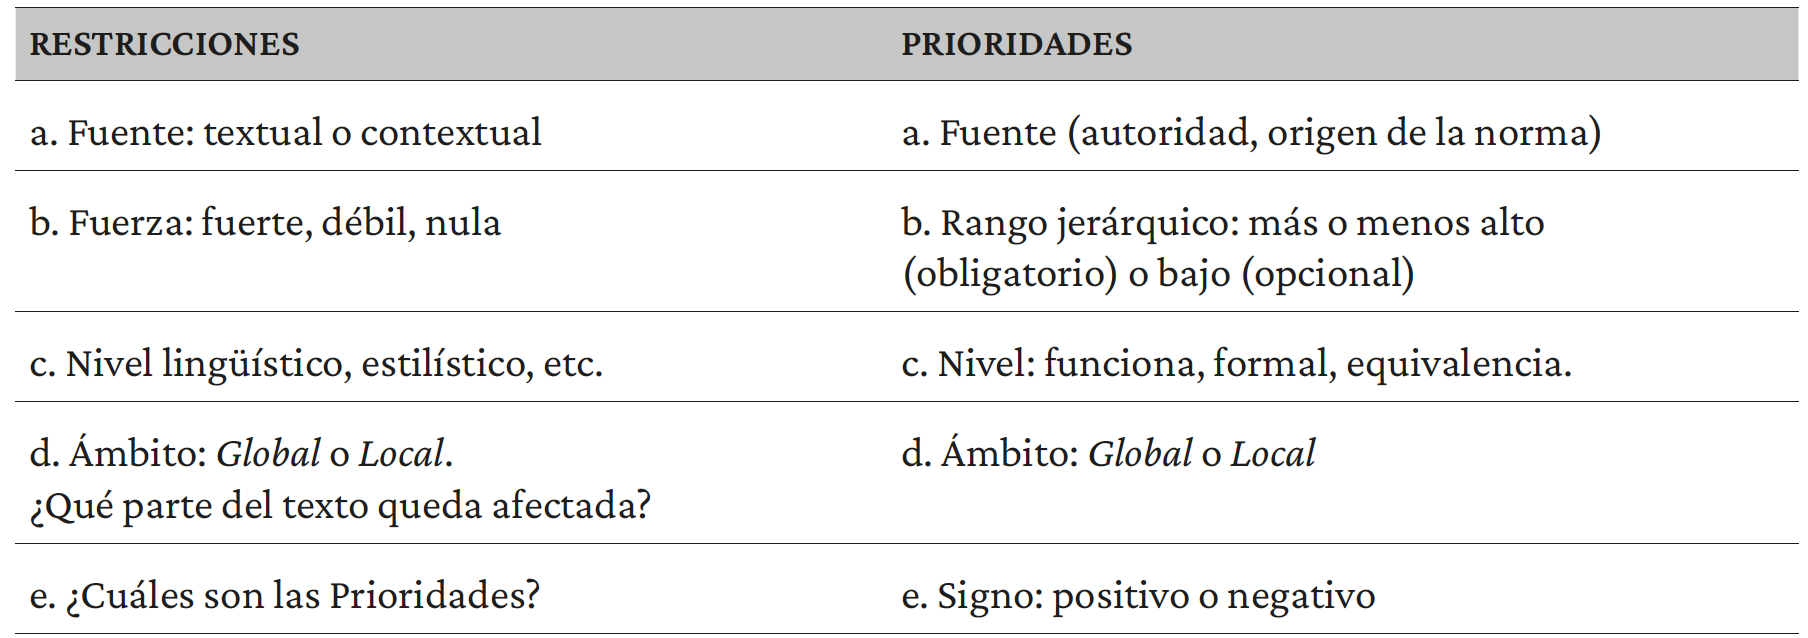 Tabla 1. Restricciones y prioridades en la variación traductológica. Nota. Adaptado de Zabalbeascoa (2001, p. 137).